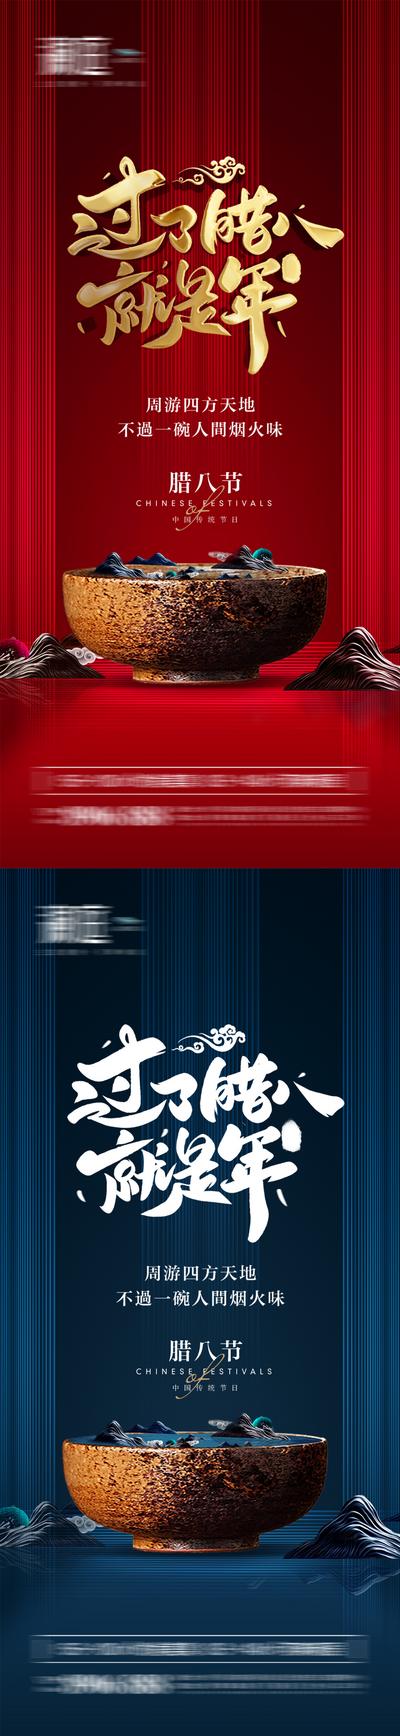 南门网 海报 中国传统节日 腊八节 腊八粥 系列